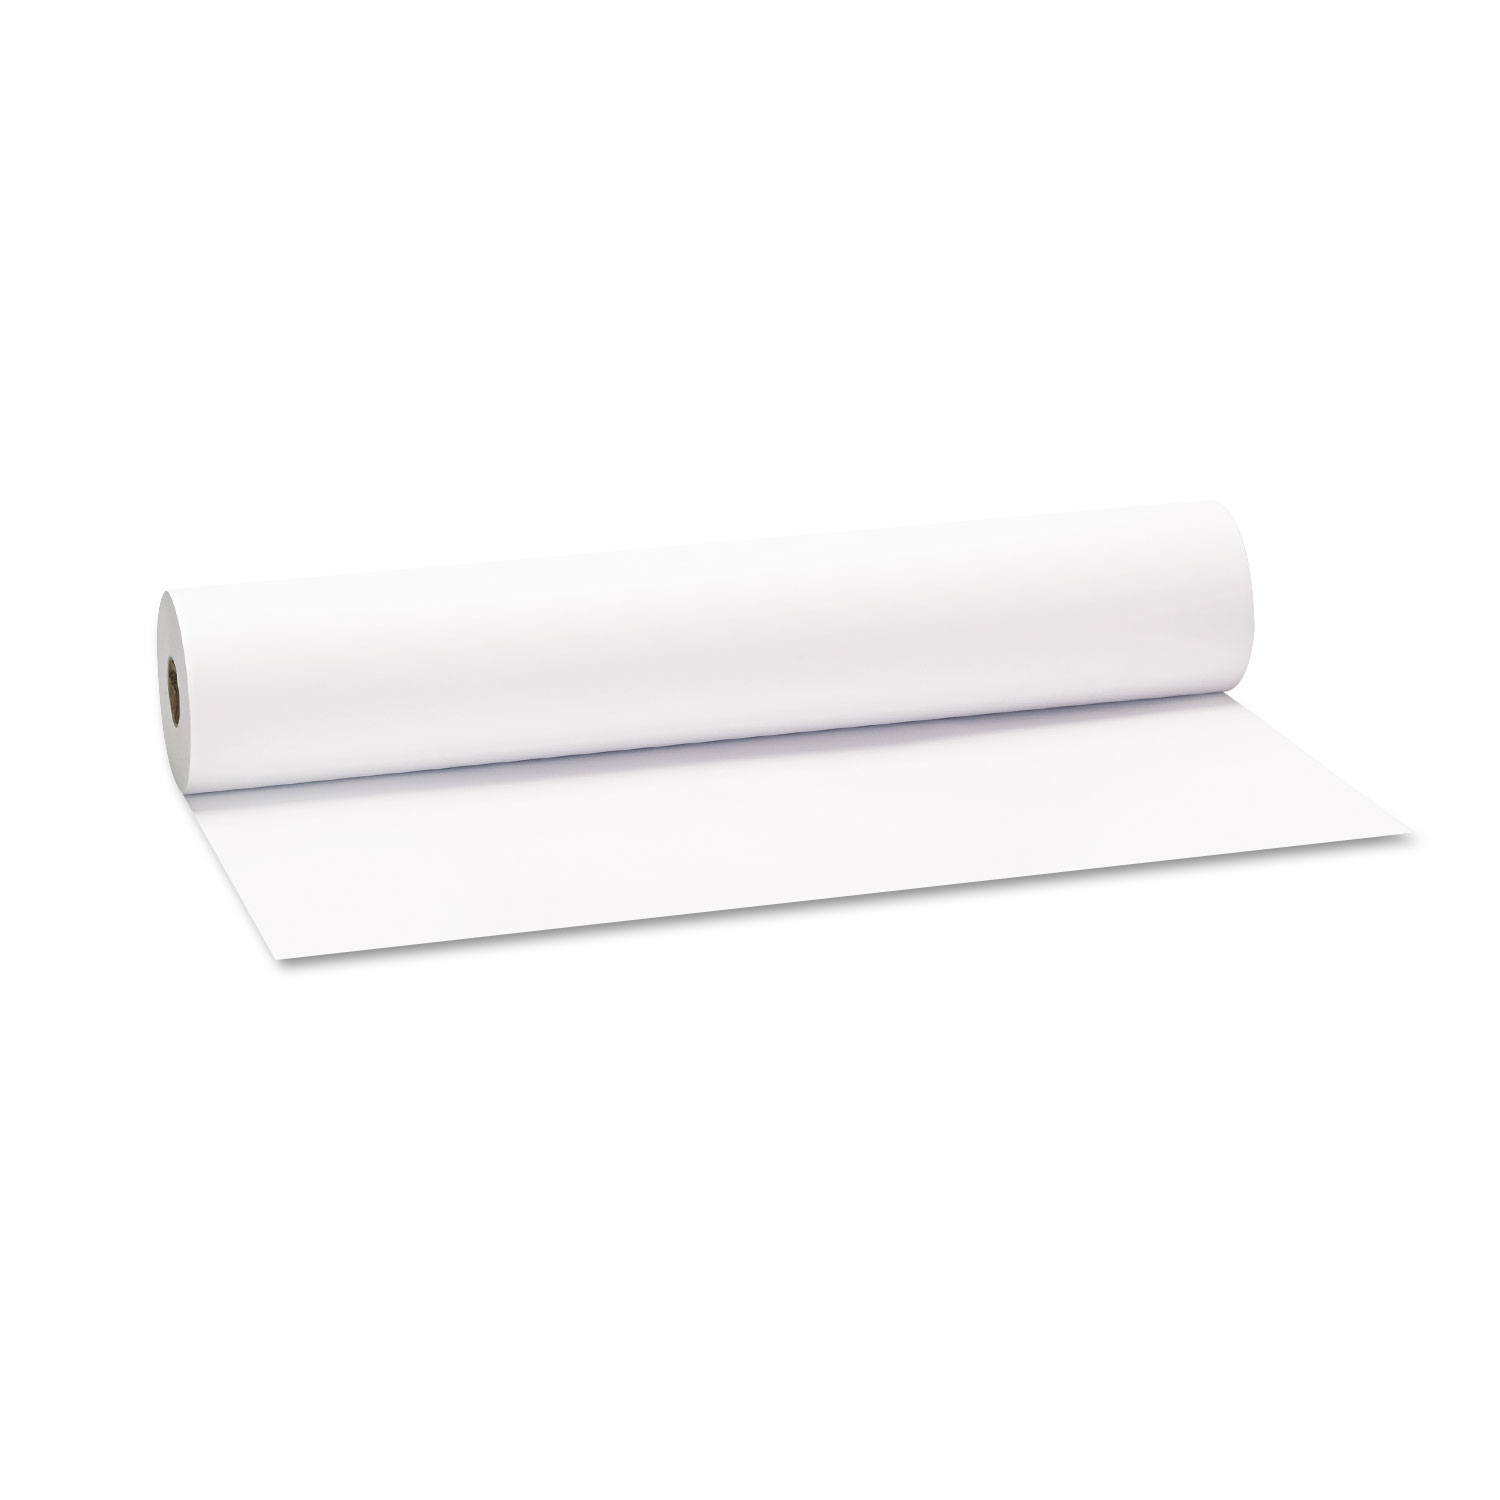 Universal Inkjet Bond Paper, 36 x 574 ft, White